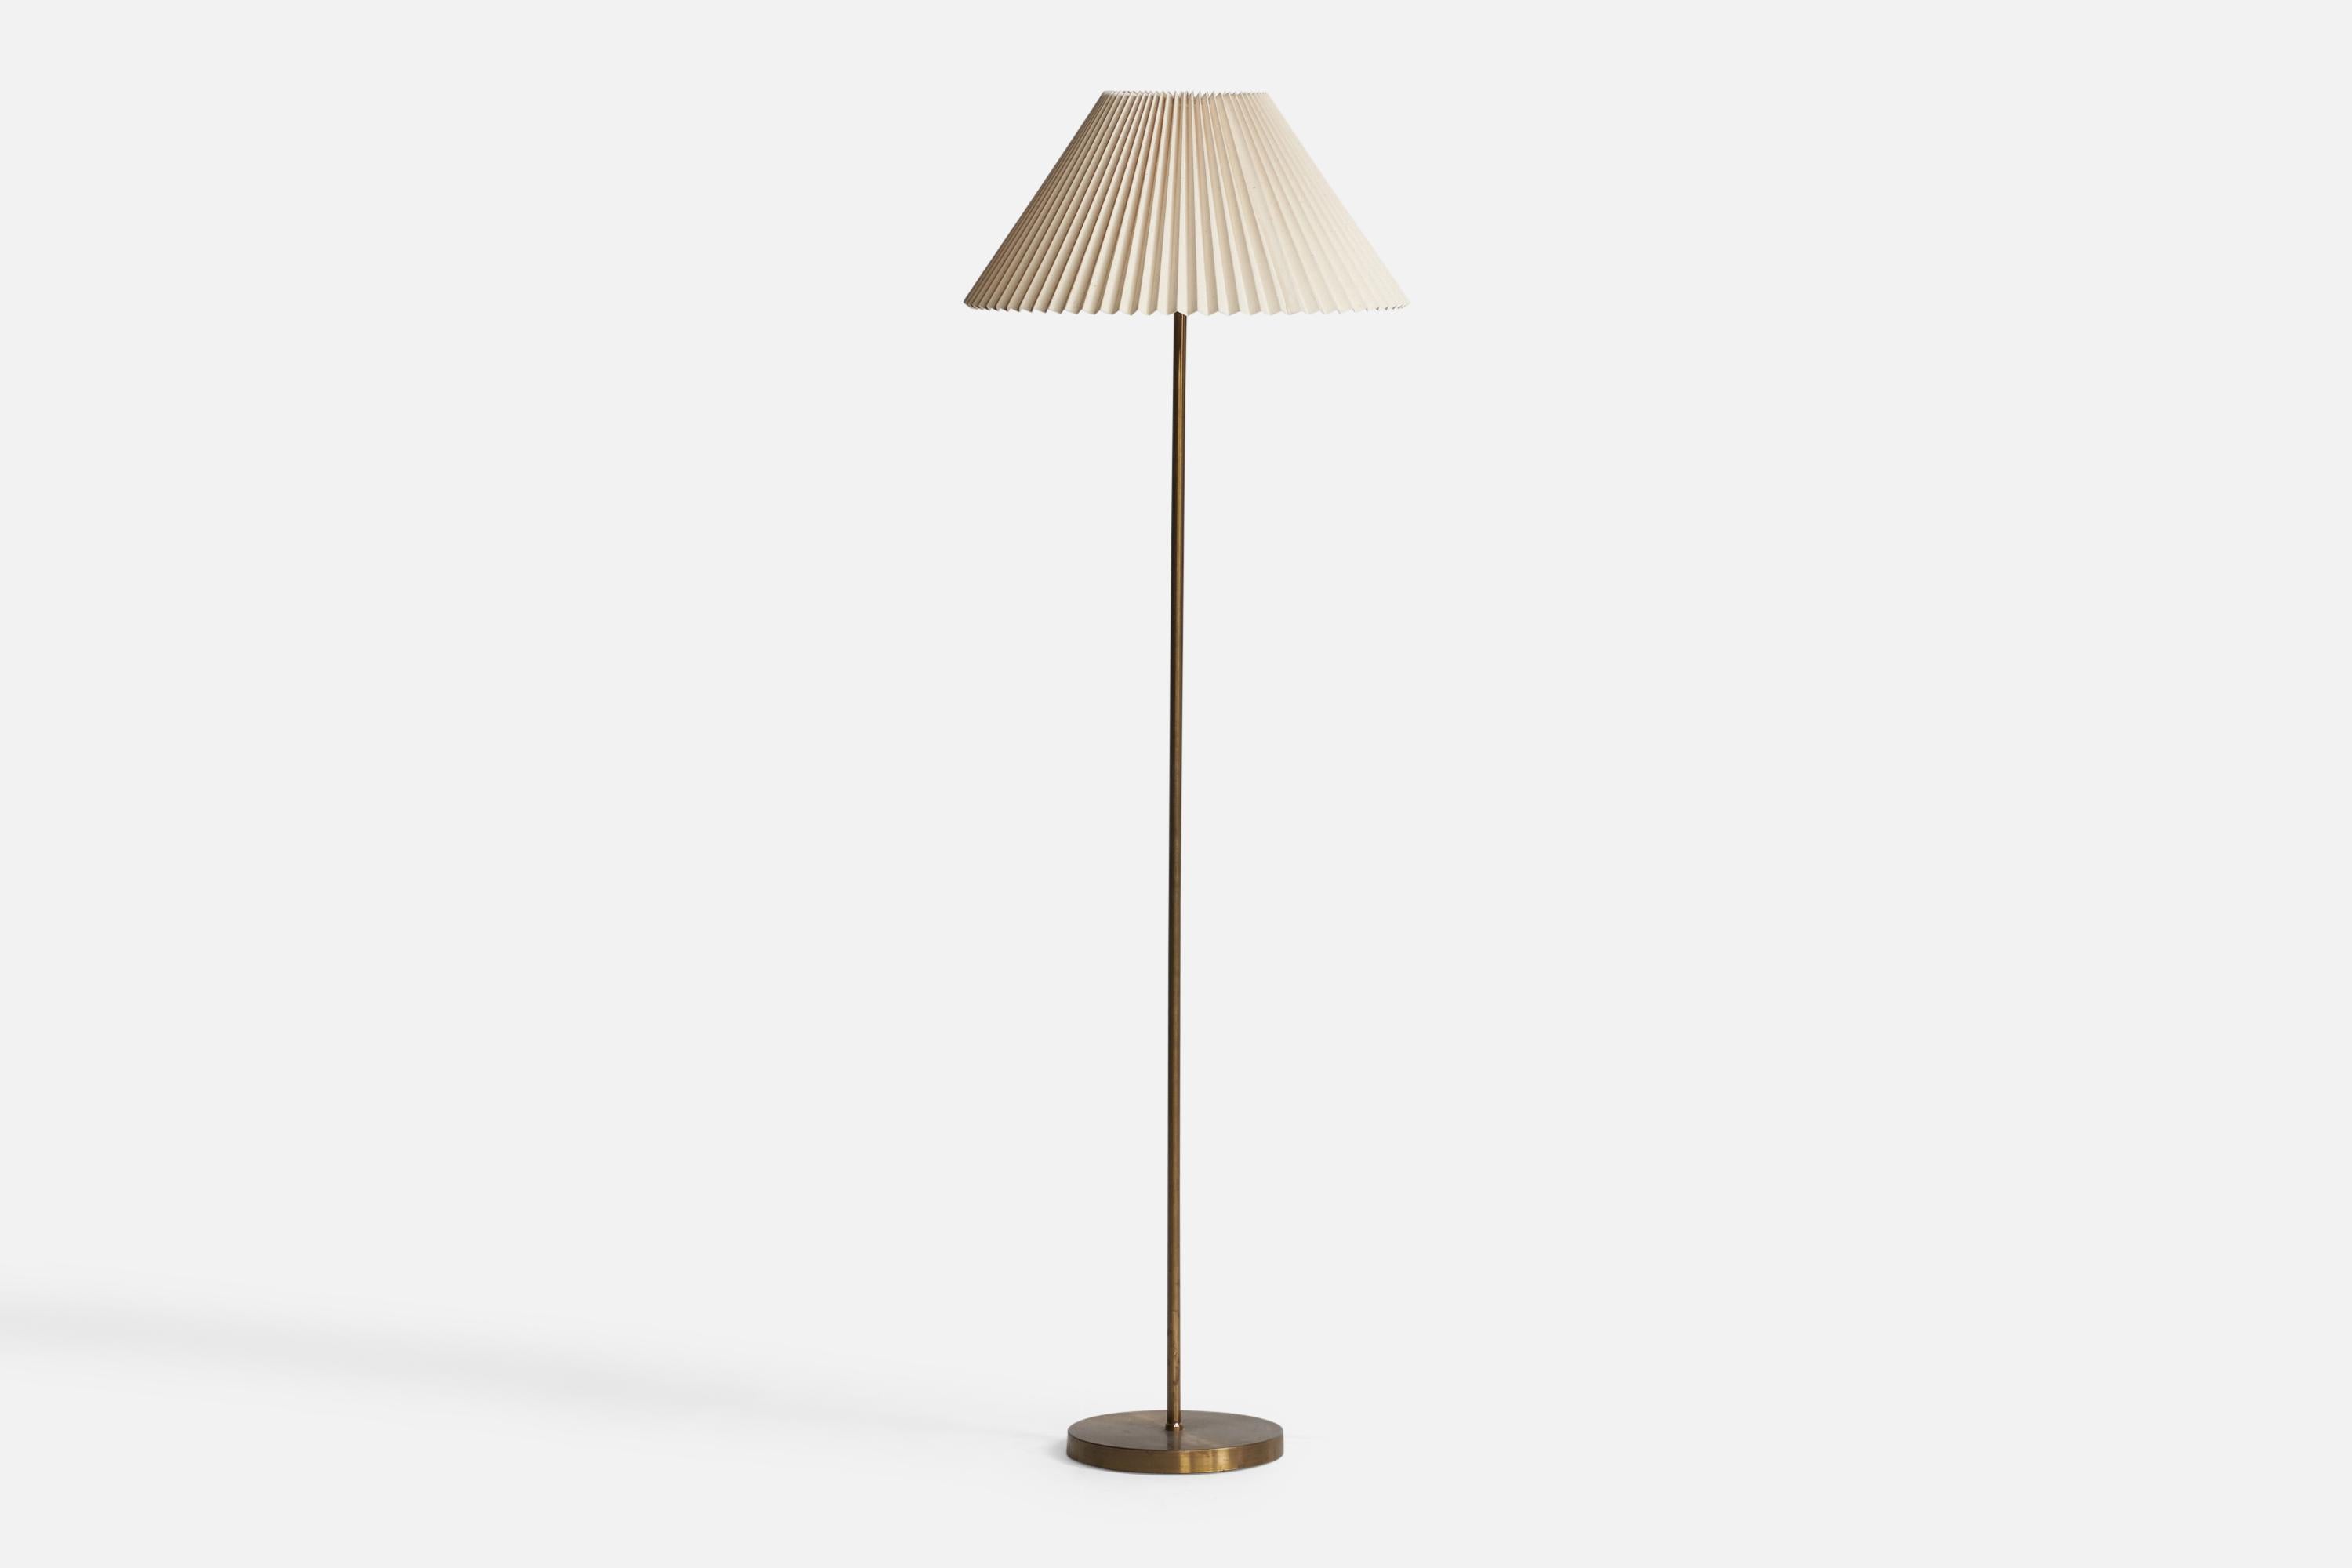 Stehlampe aus Messing und Papier, entworfen und hergestellt in Schweden, ca. 1950er Jahre.

Gesamtabmessungen (Zoll): 60